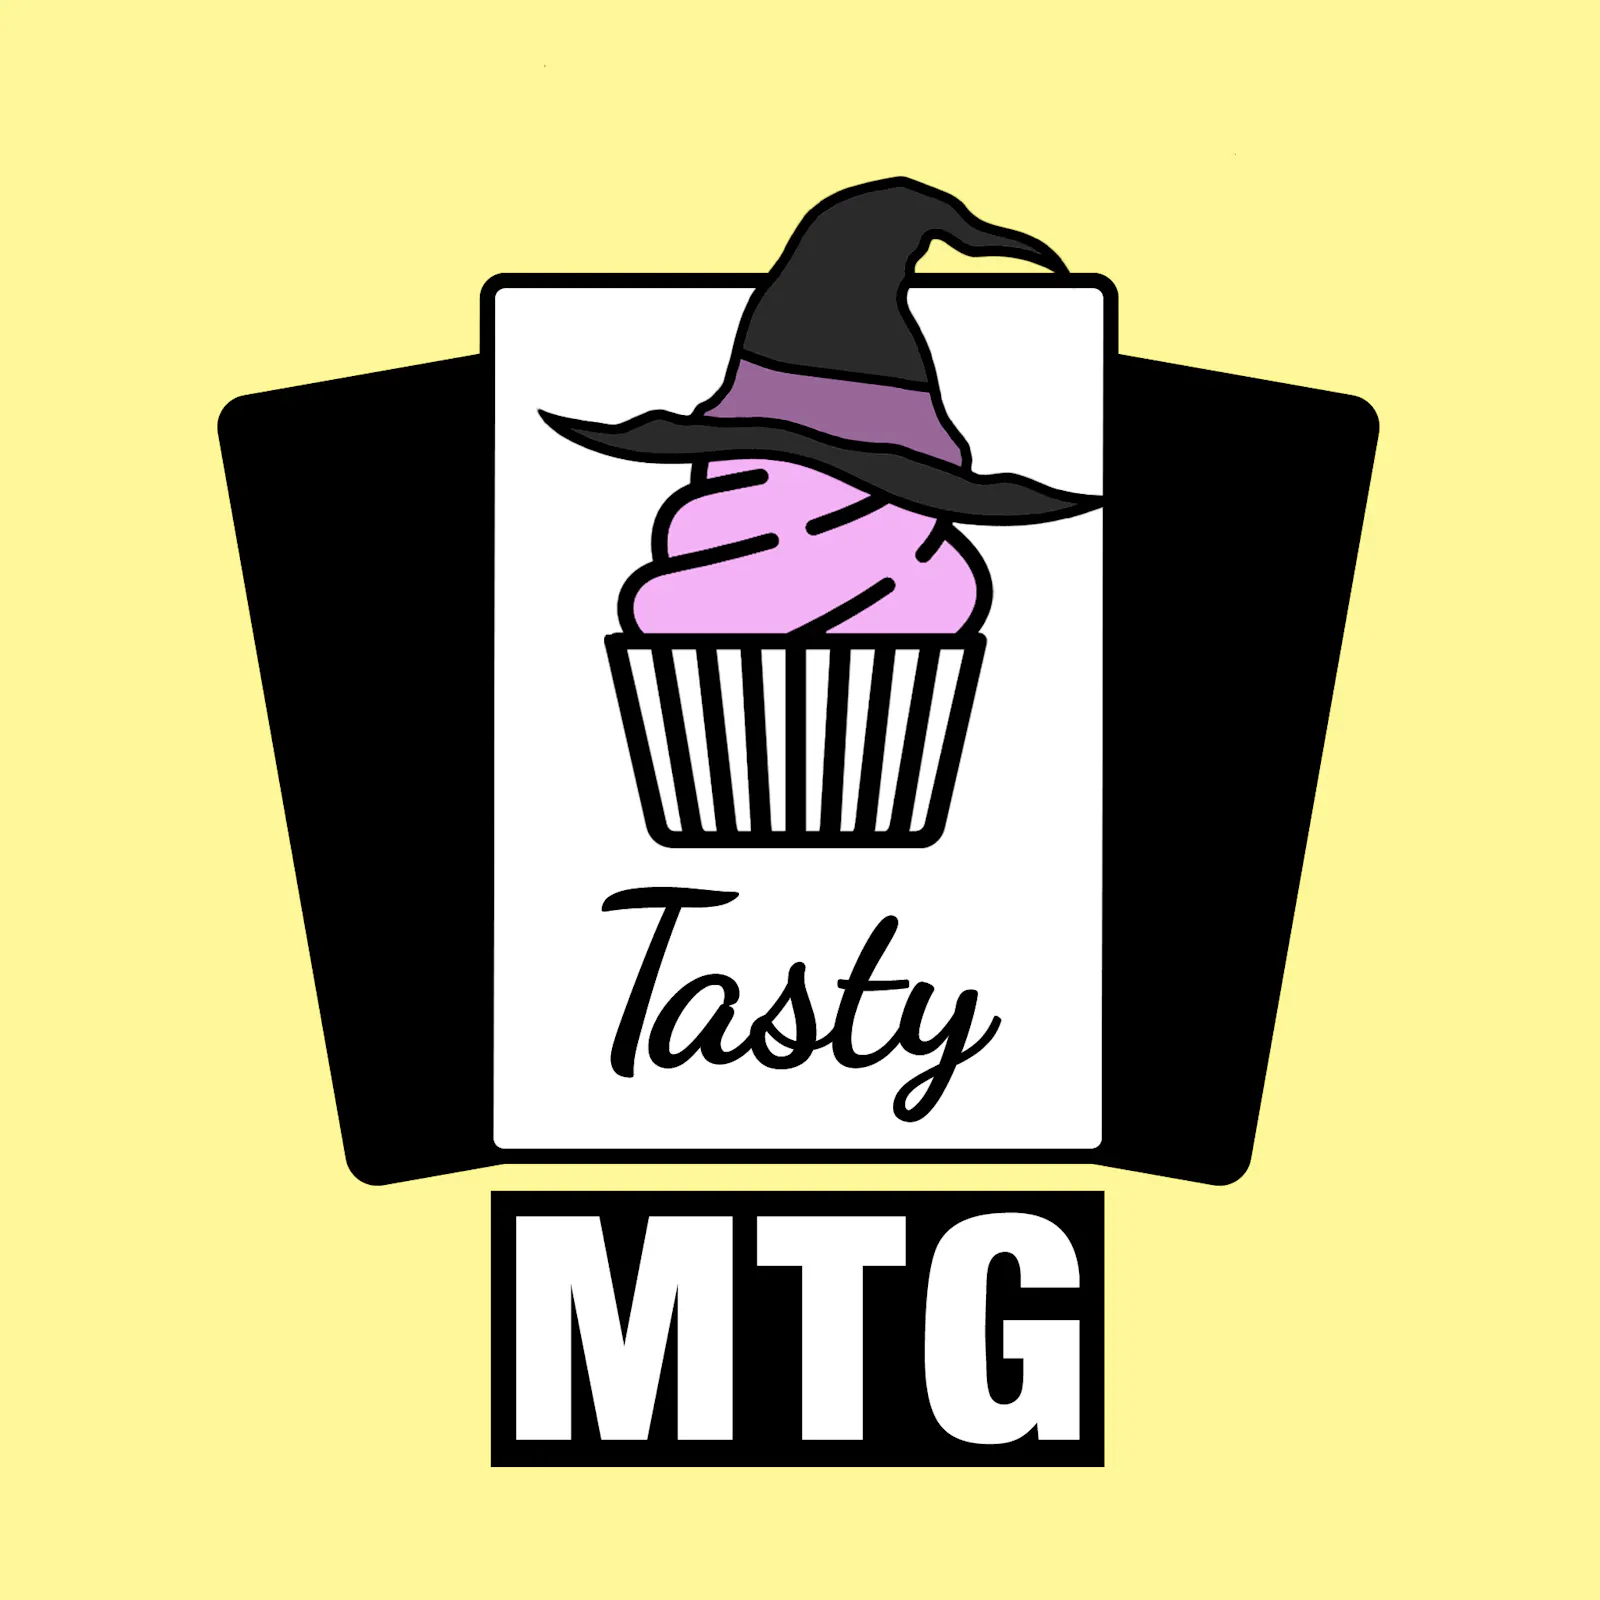 Das Tasty-MTG Logo für die Folge: Ein Muffin mit einem Hexenhut auf dem "Kopf"